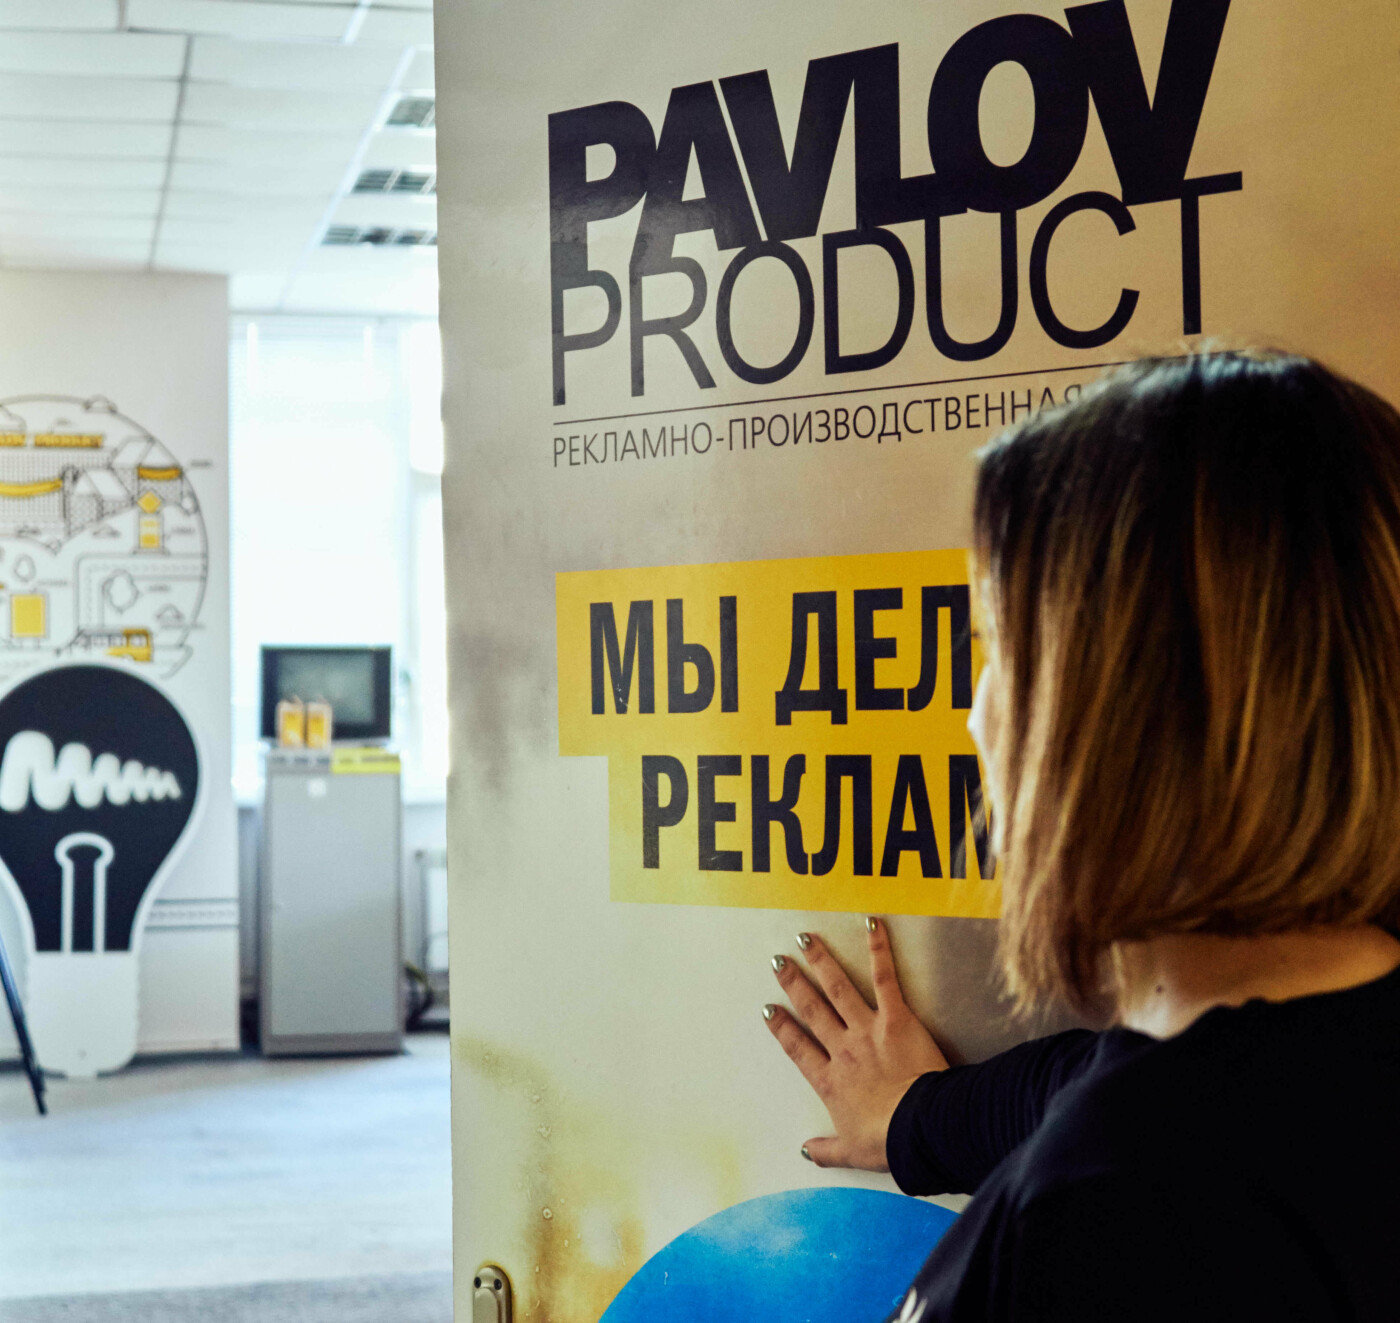 Компанія Pavlov.ua увійшла в ТОП 100 кращих digital-агентств України, фото-3